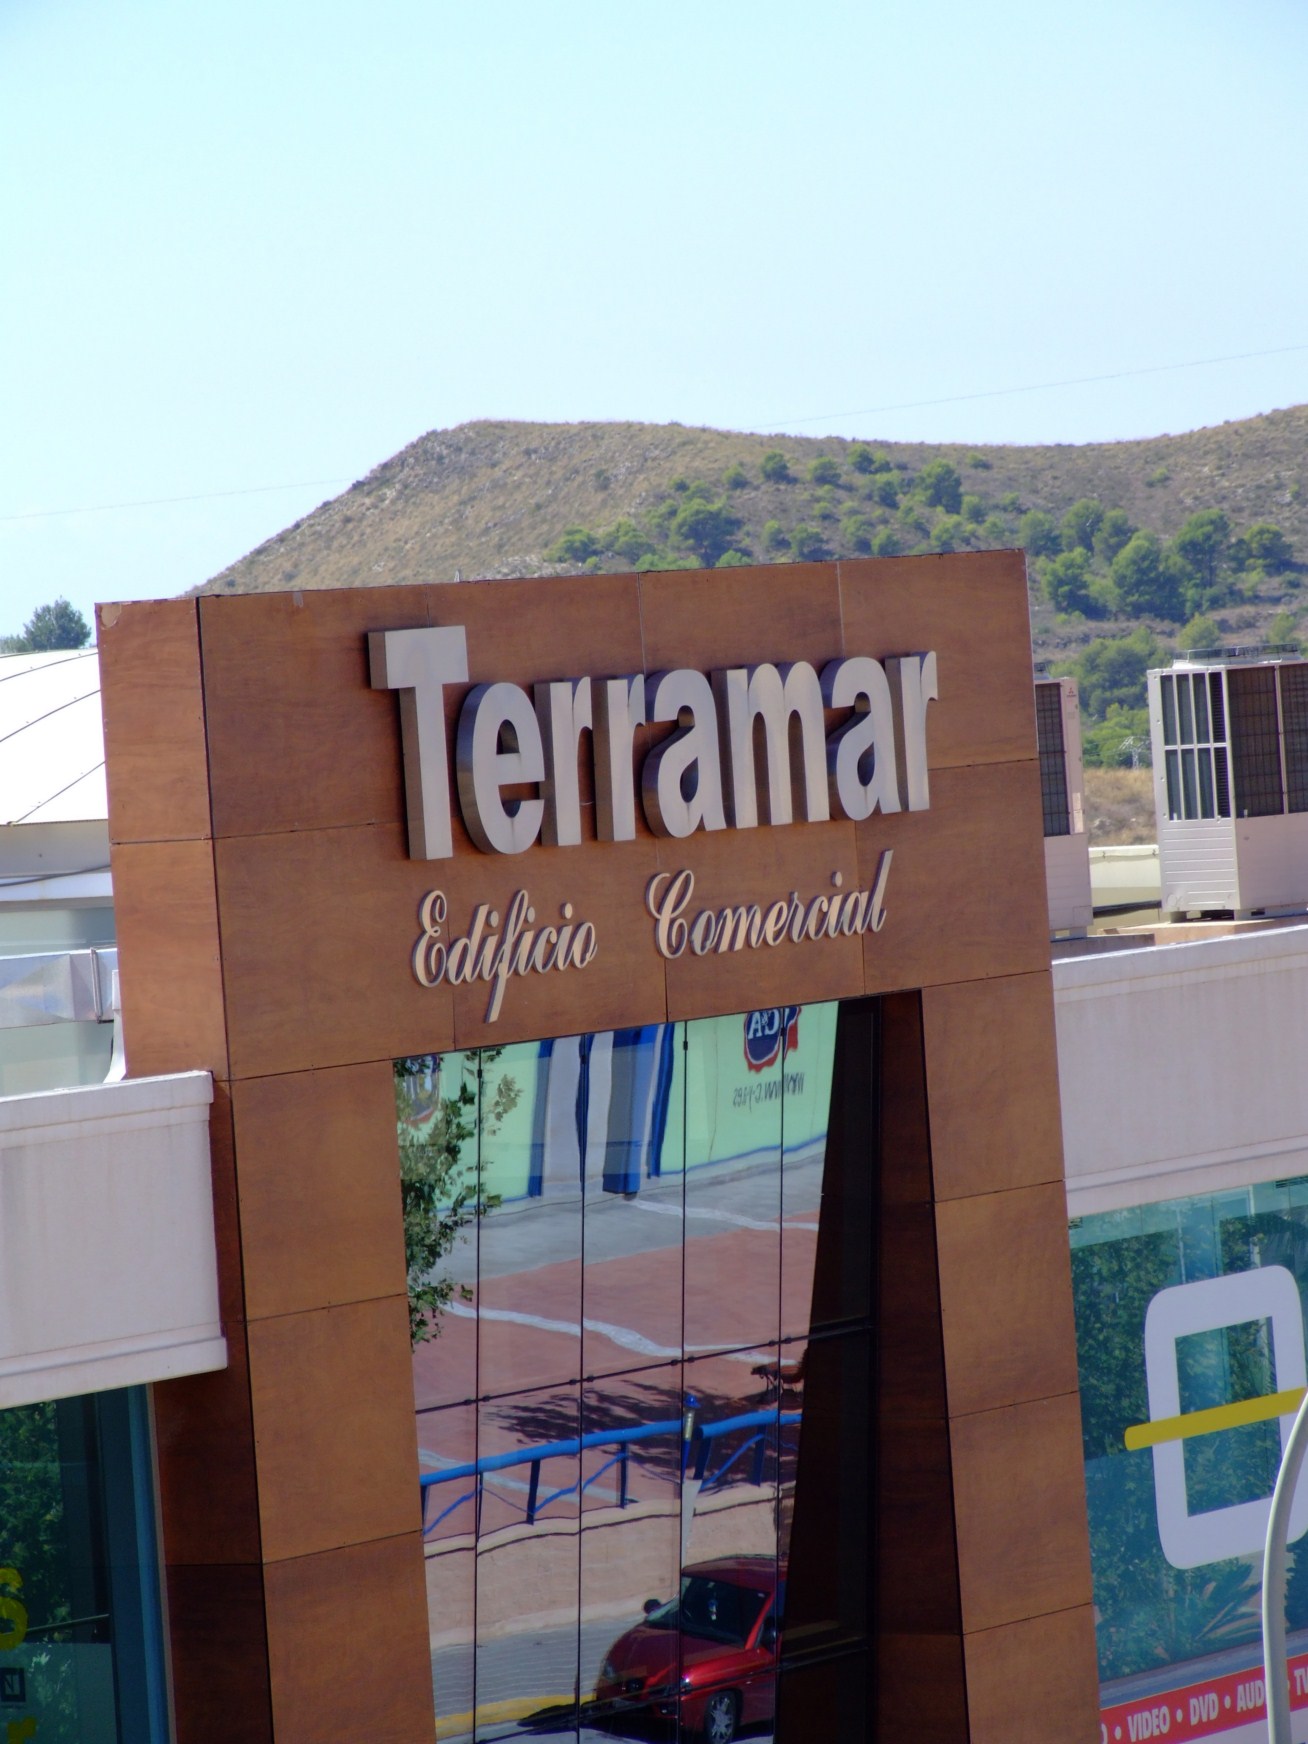 Terramar Centro de Negocios incorpora a sus instalaciones un nuevo proyecto